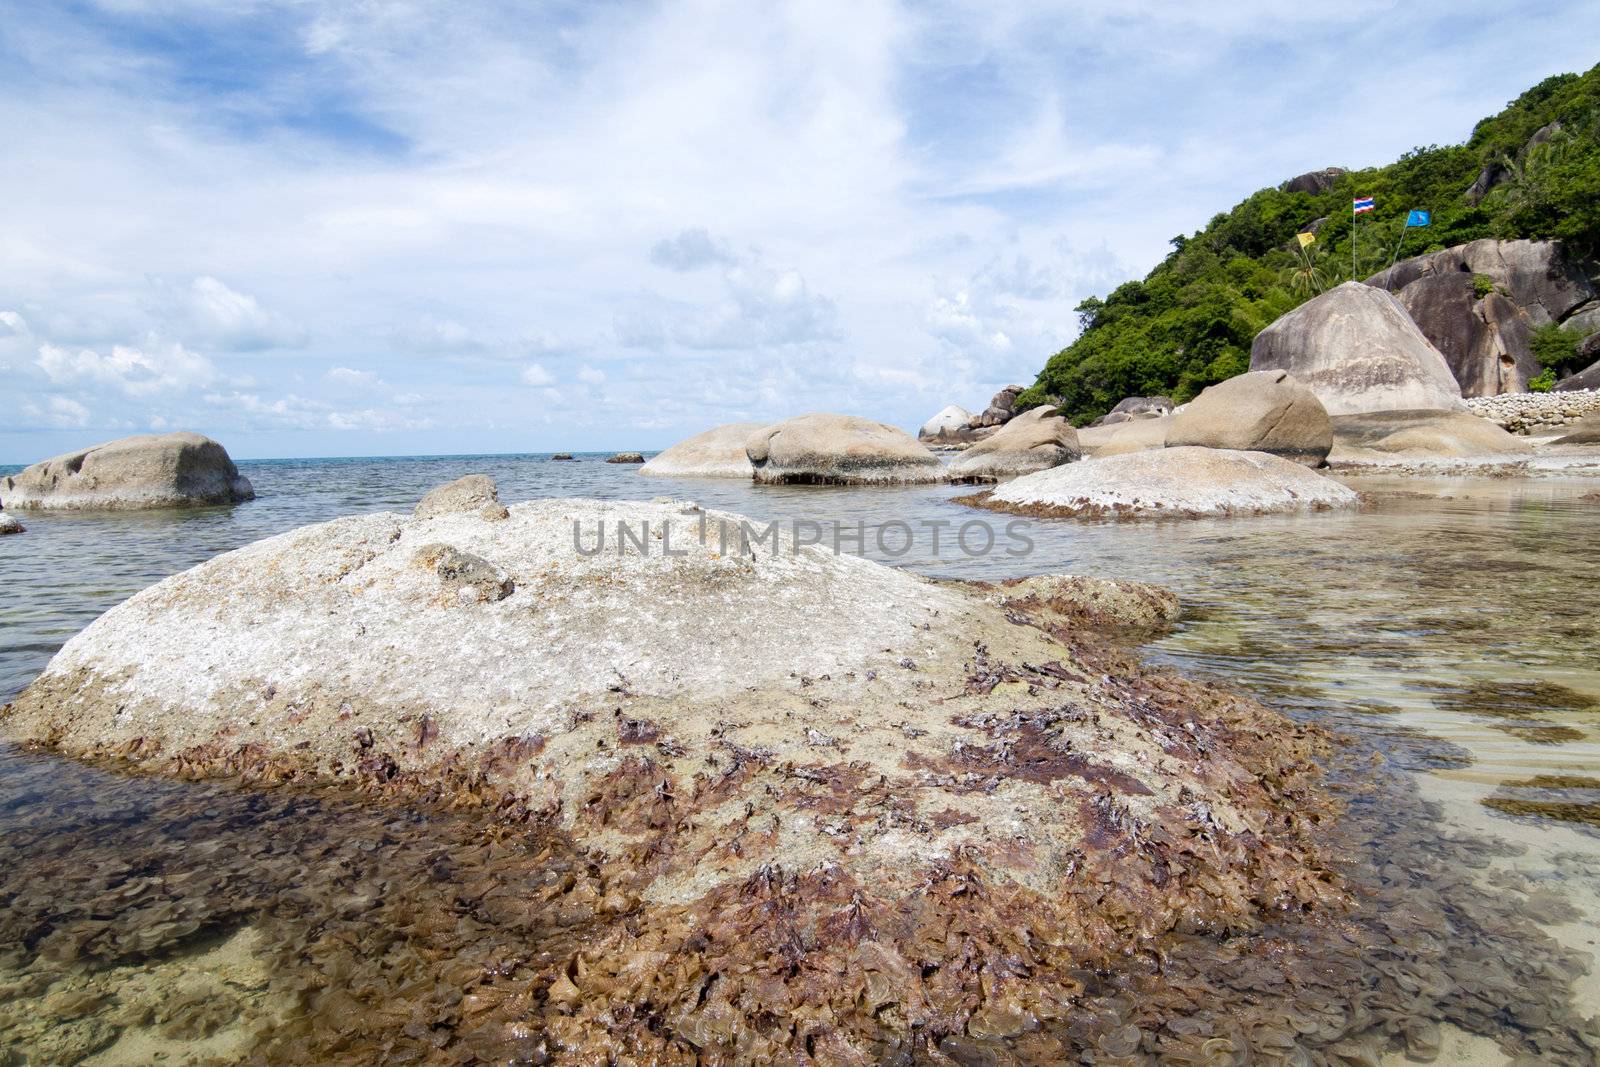 Thai island of Koh Samui. The pile of rocks on the beach